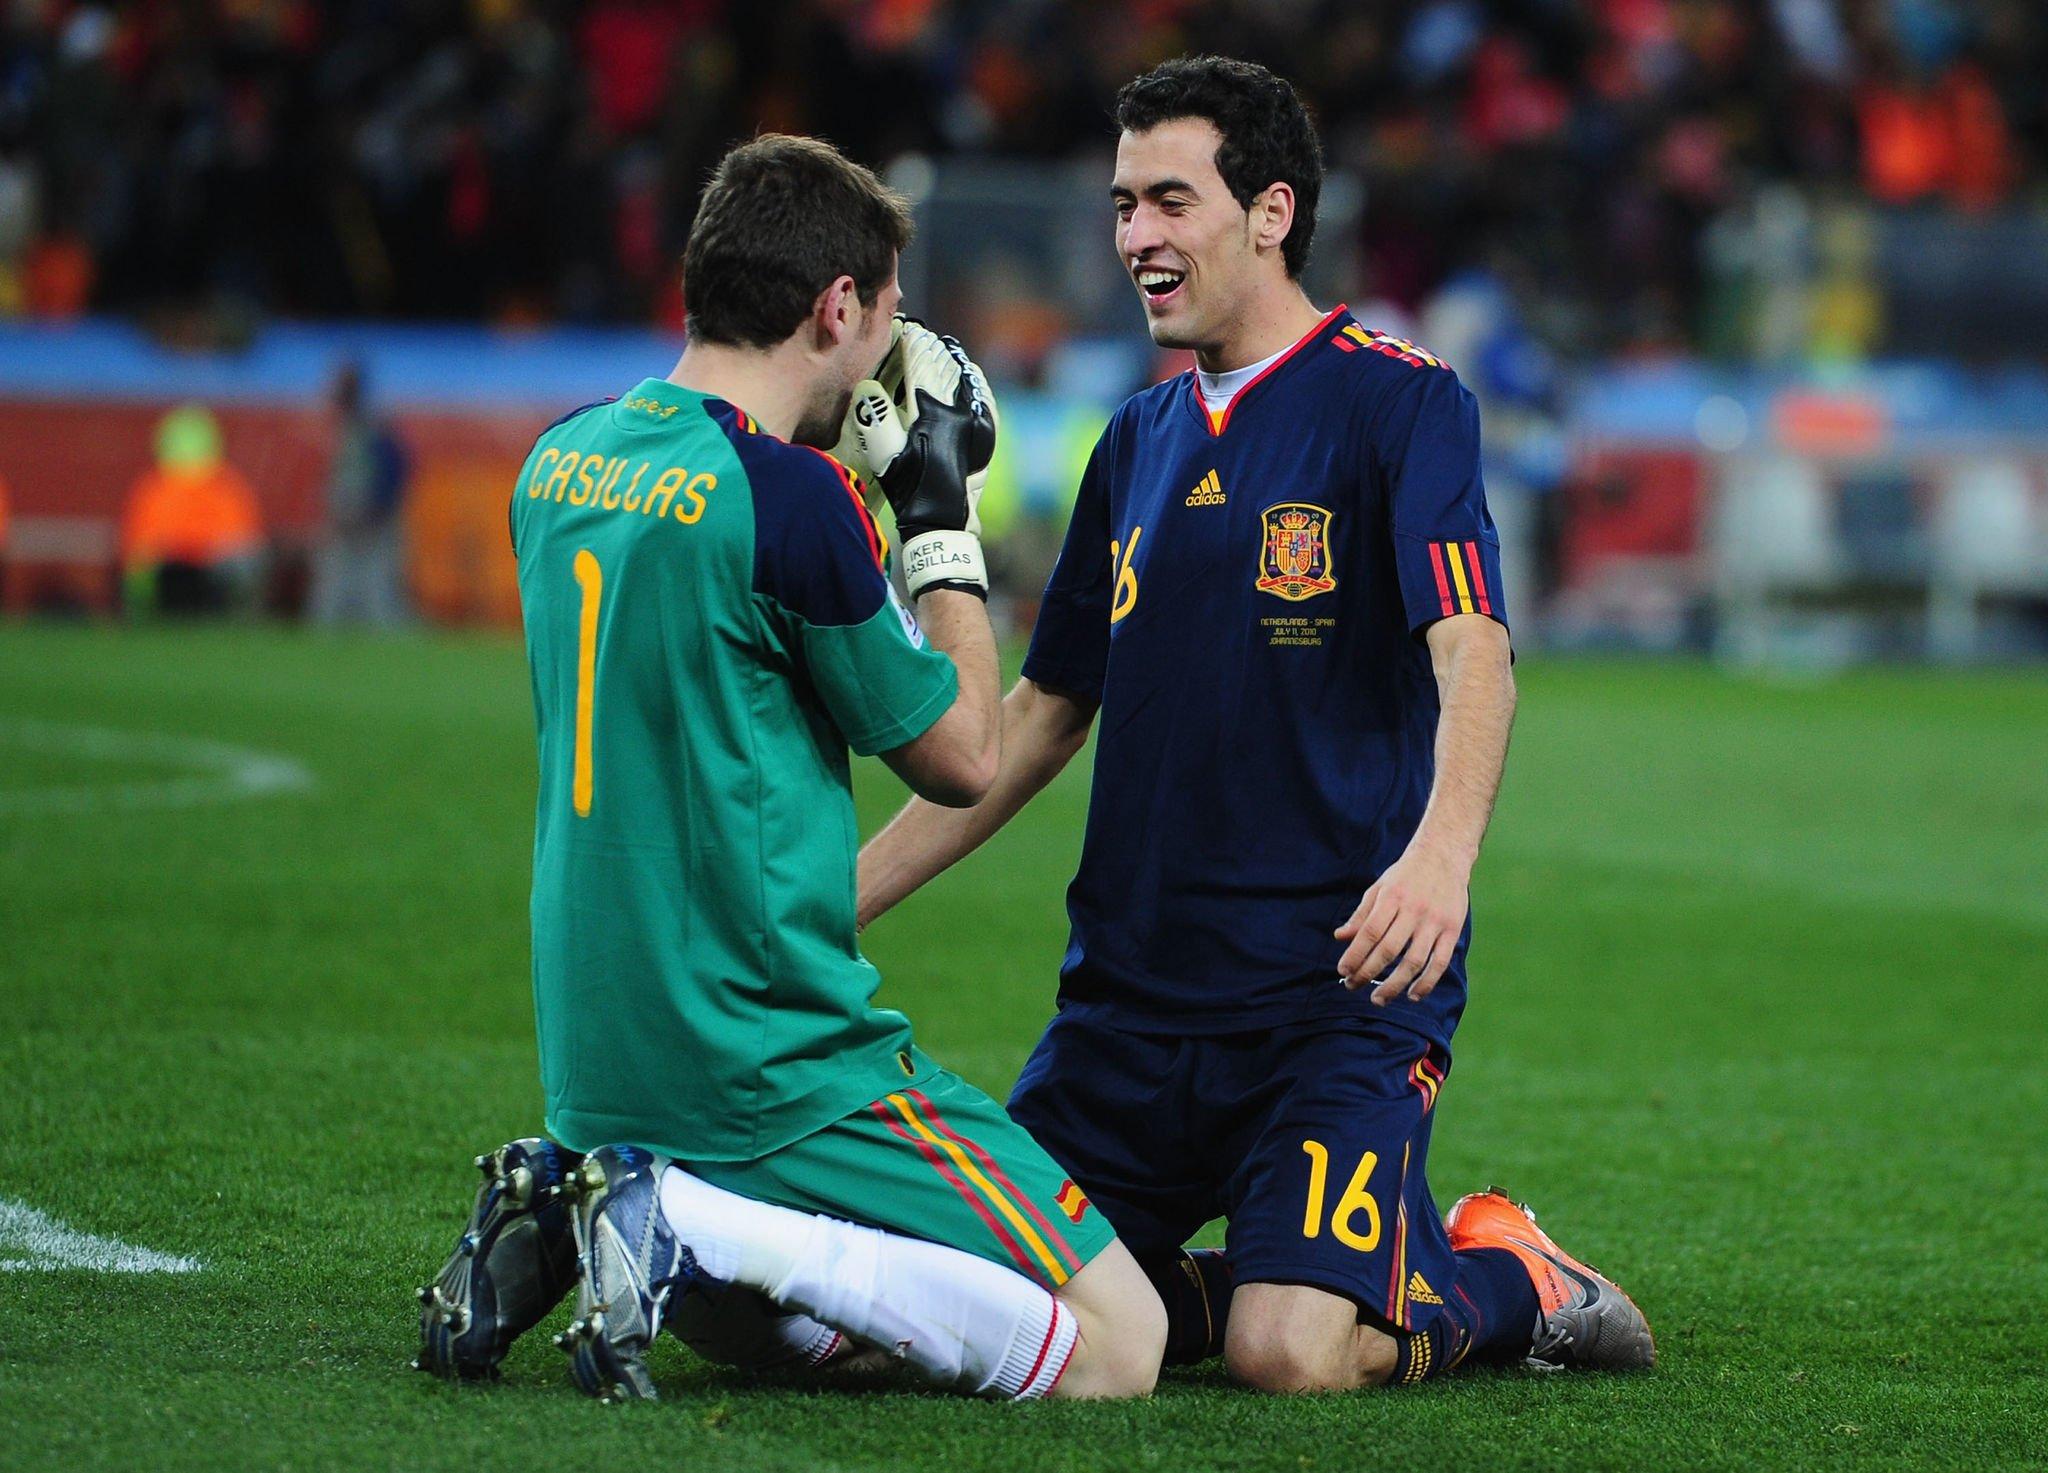 سيرجيو بوسكيتس هو العضو الوحيد في المنتخب الإسباني الذي فاز بكأس العالم عام 2010